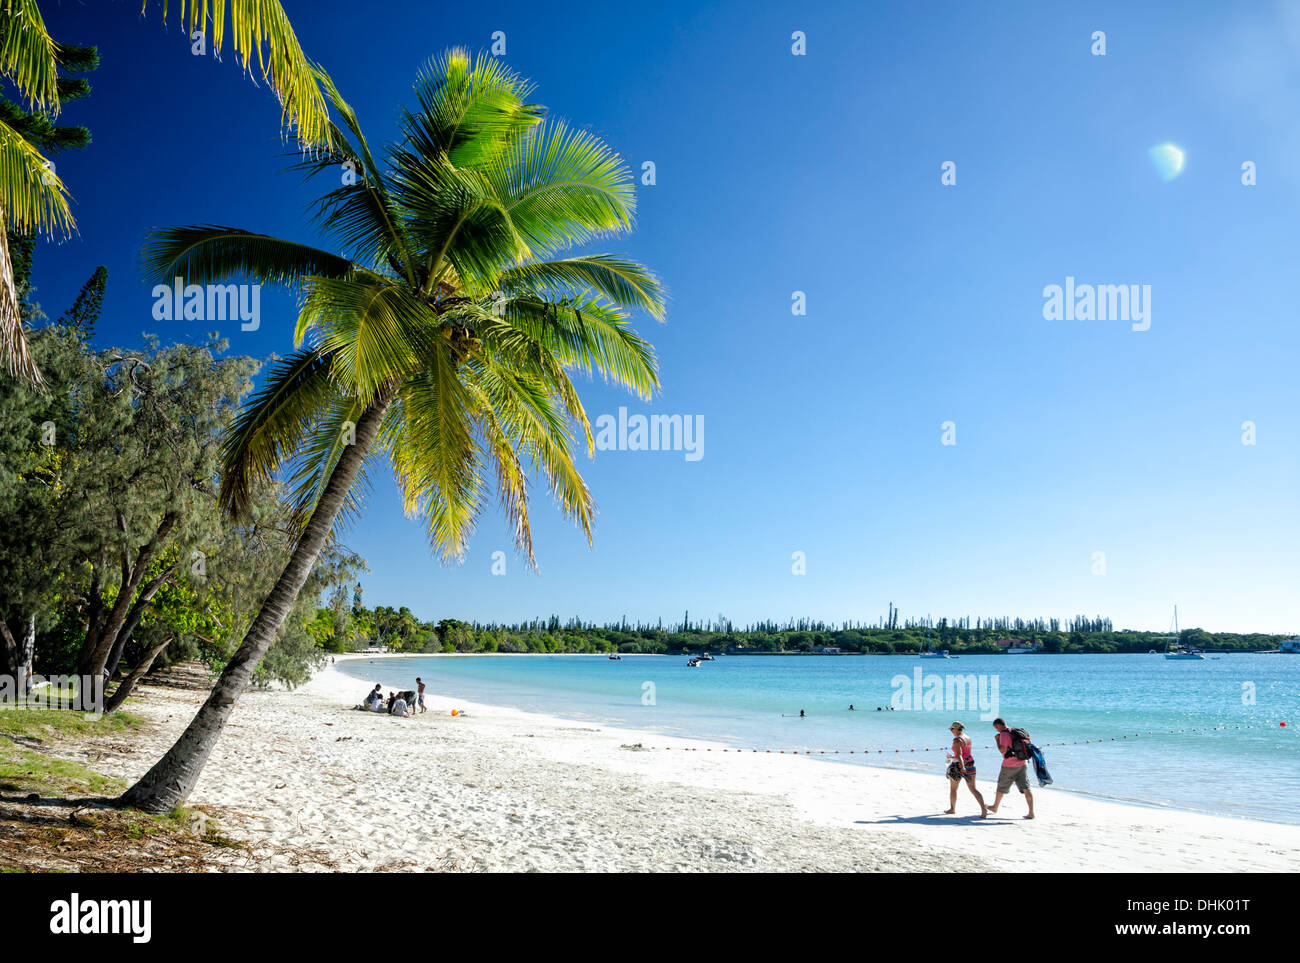 Menschen zu Fuß auf den perfekten weißen Sand von einem tropischen Strand, unter Palmen und neben dem reinen Blau des Meeres Stockfoto